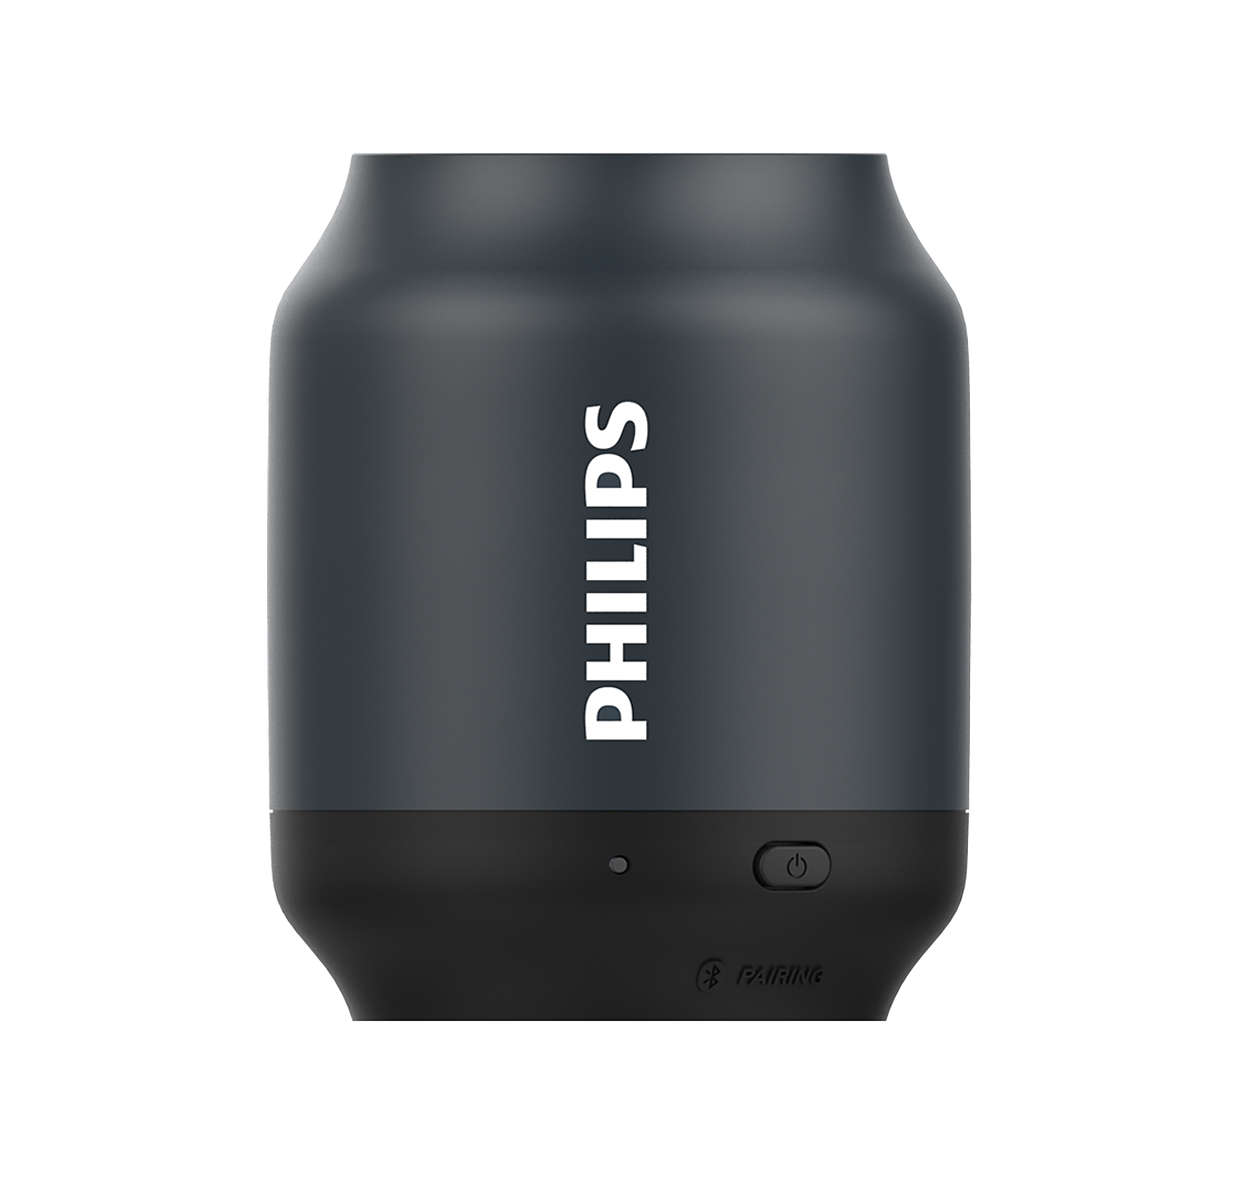 Philips bluetooth box - Die preiswertesten Philips bluetooth box ausführlich analysiert!